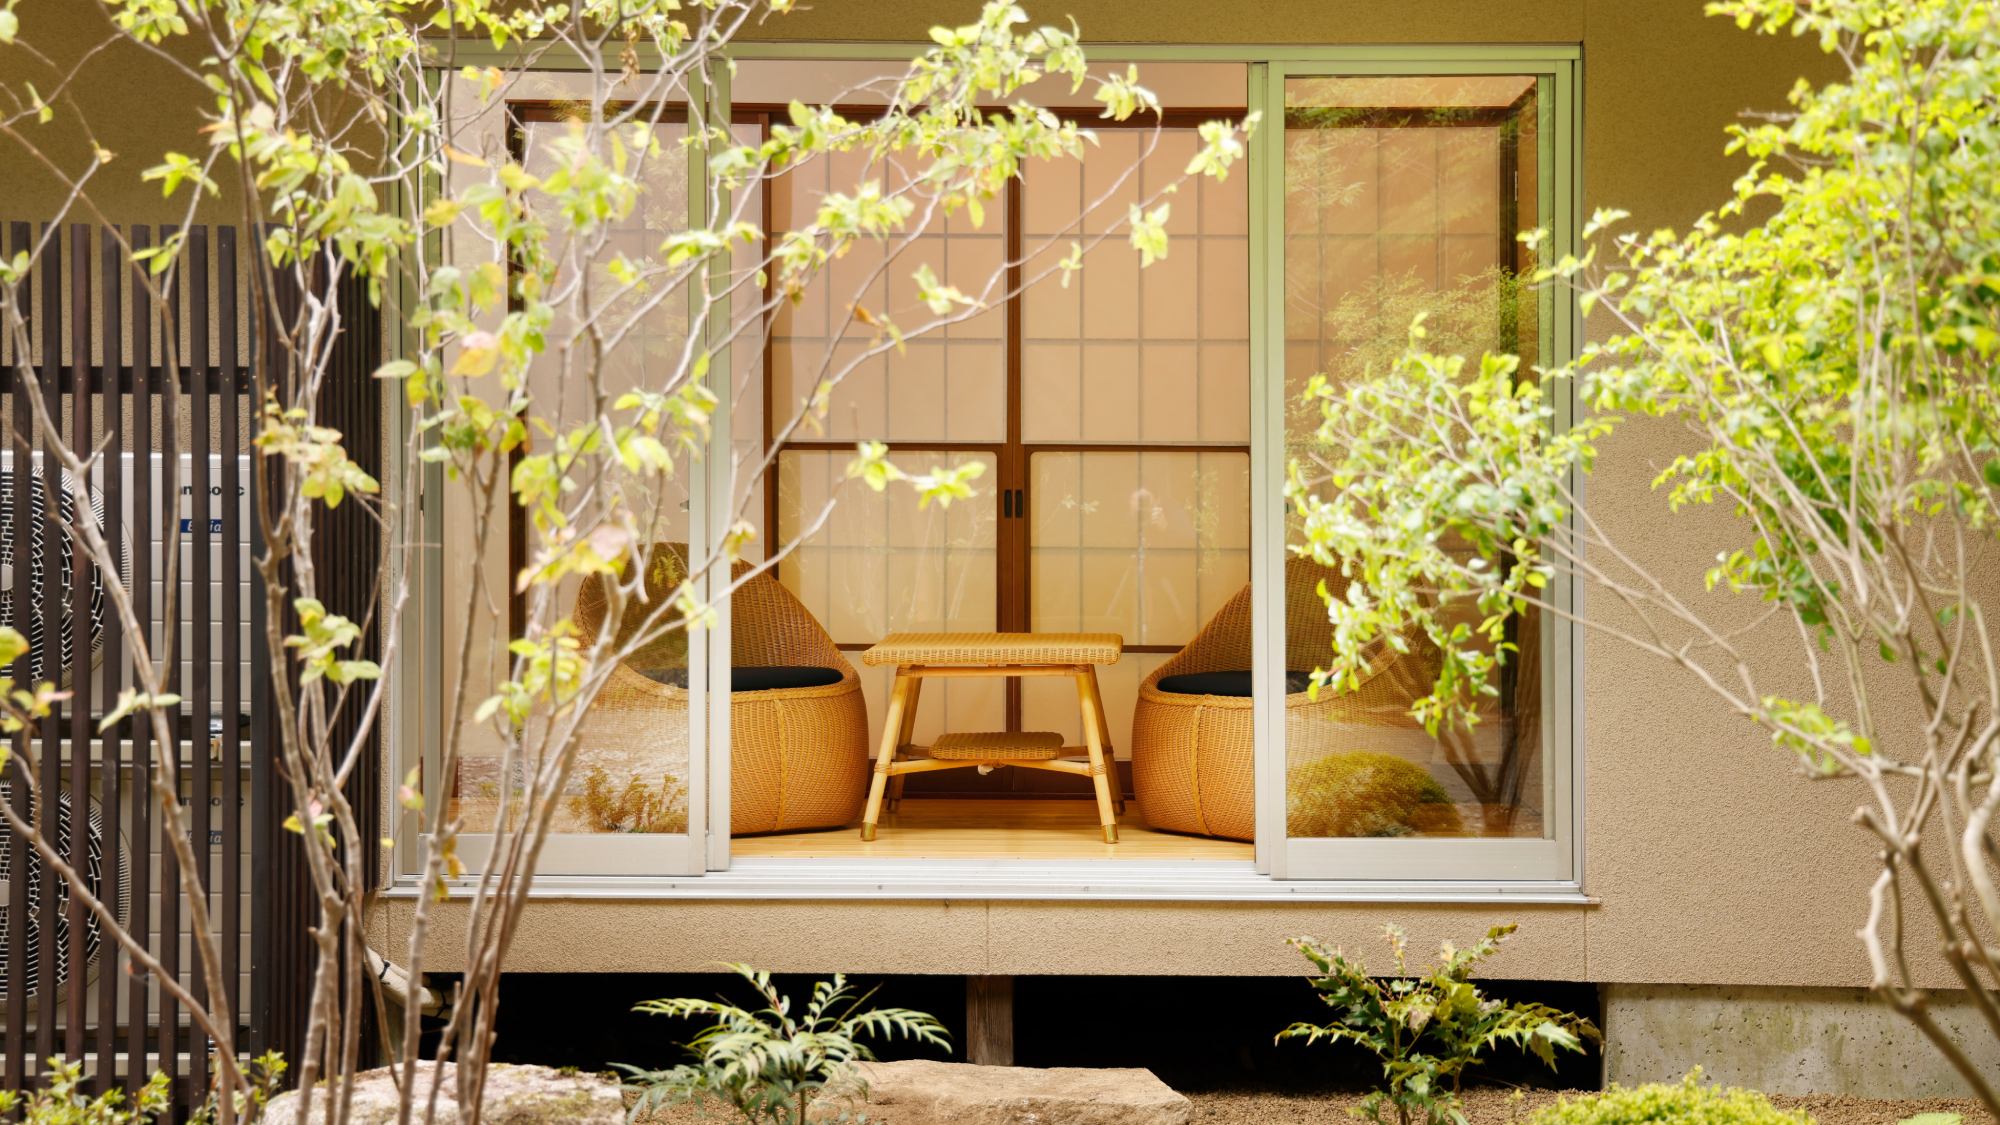 ・【濃藍の間】縁側からは日本庭園を眺めることができます。日常とは違った景色をお楽しみください